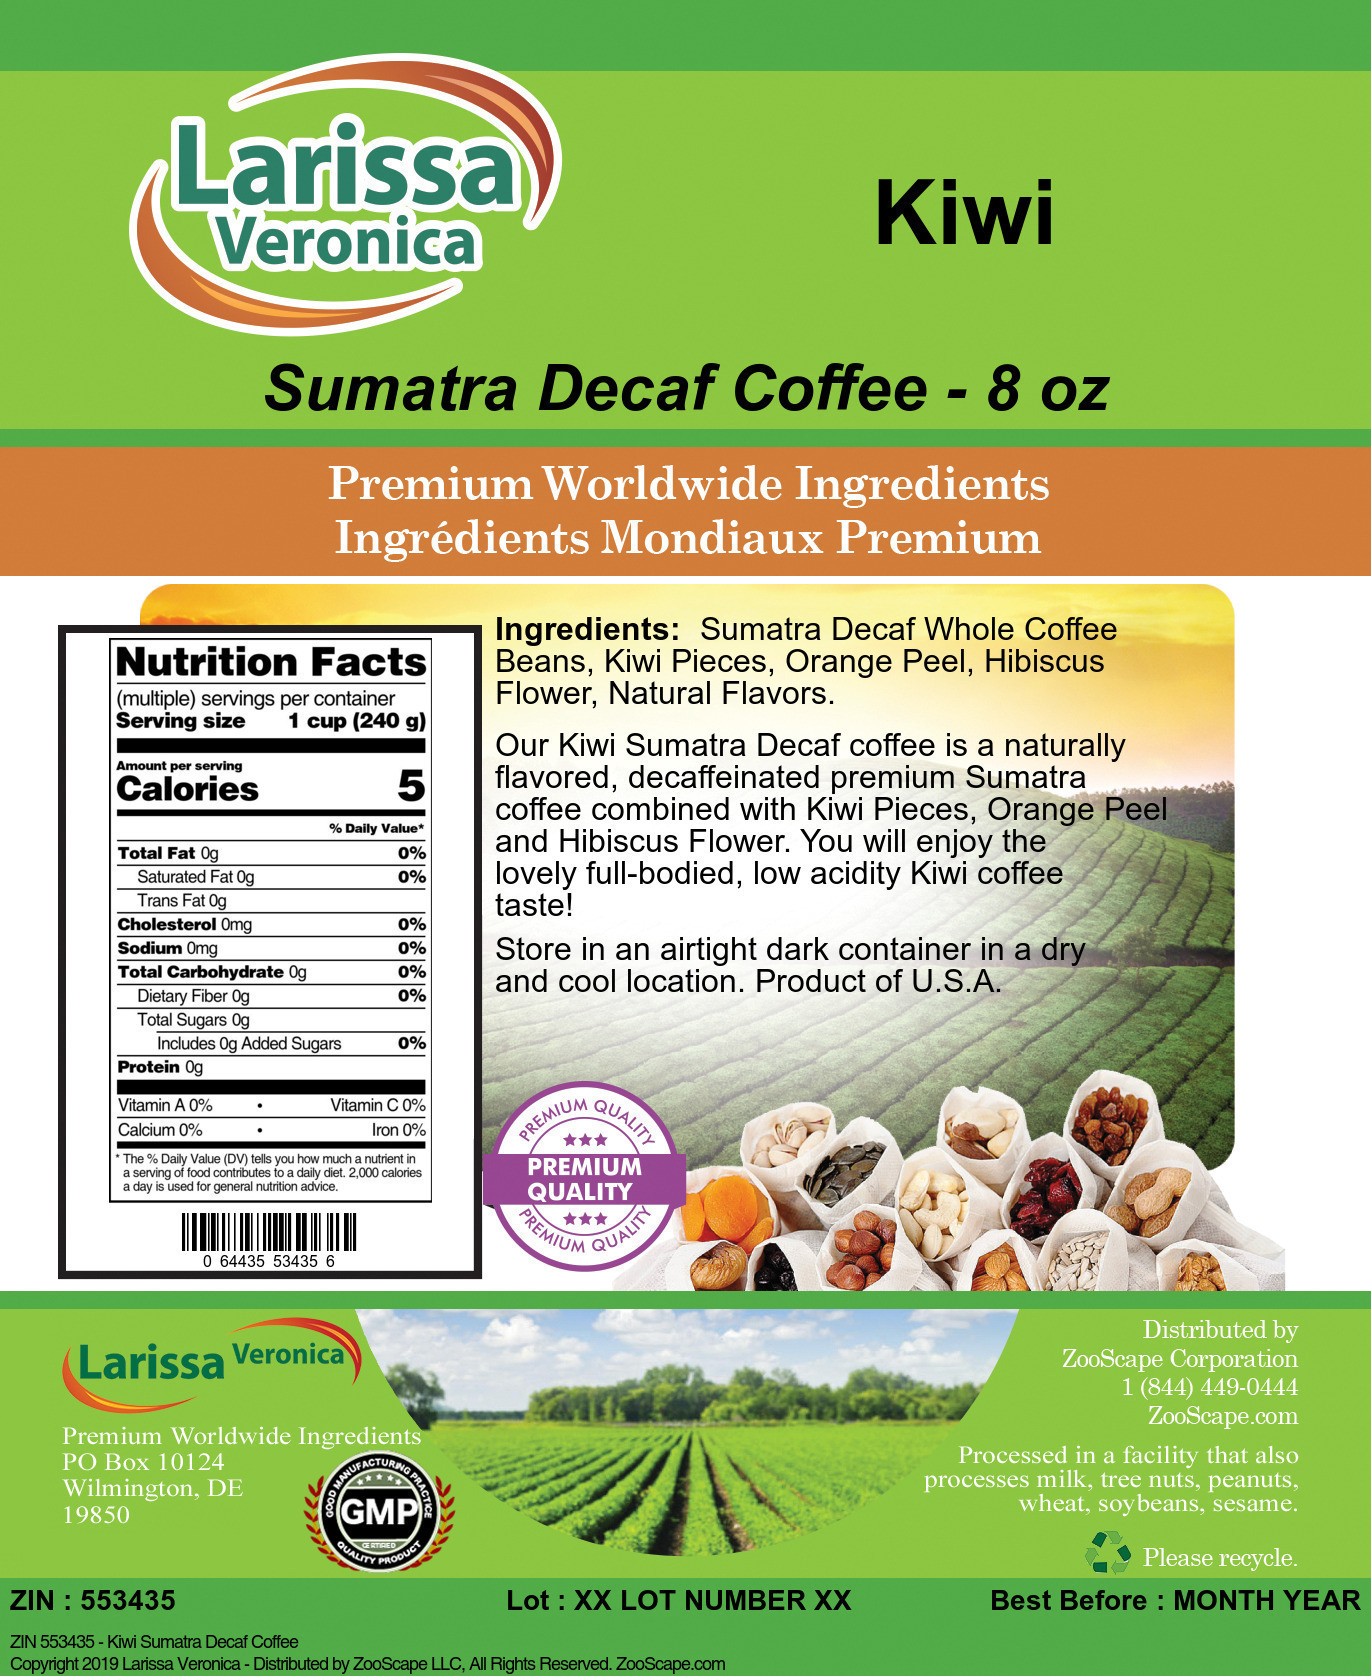 Kiwi Sumatra Decaf Coffee - Label